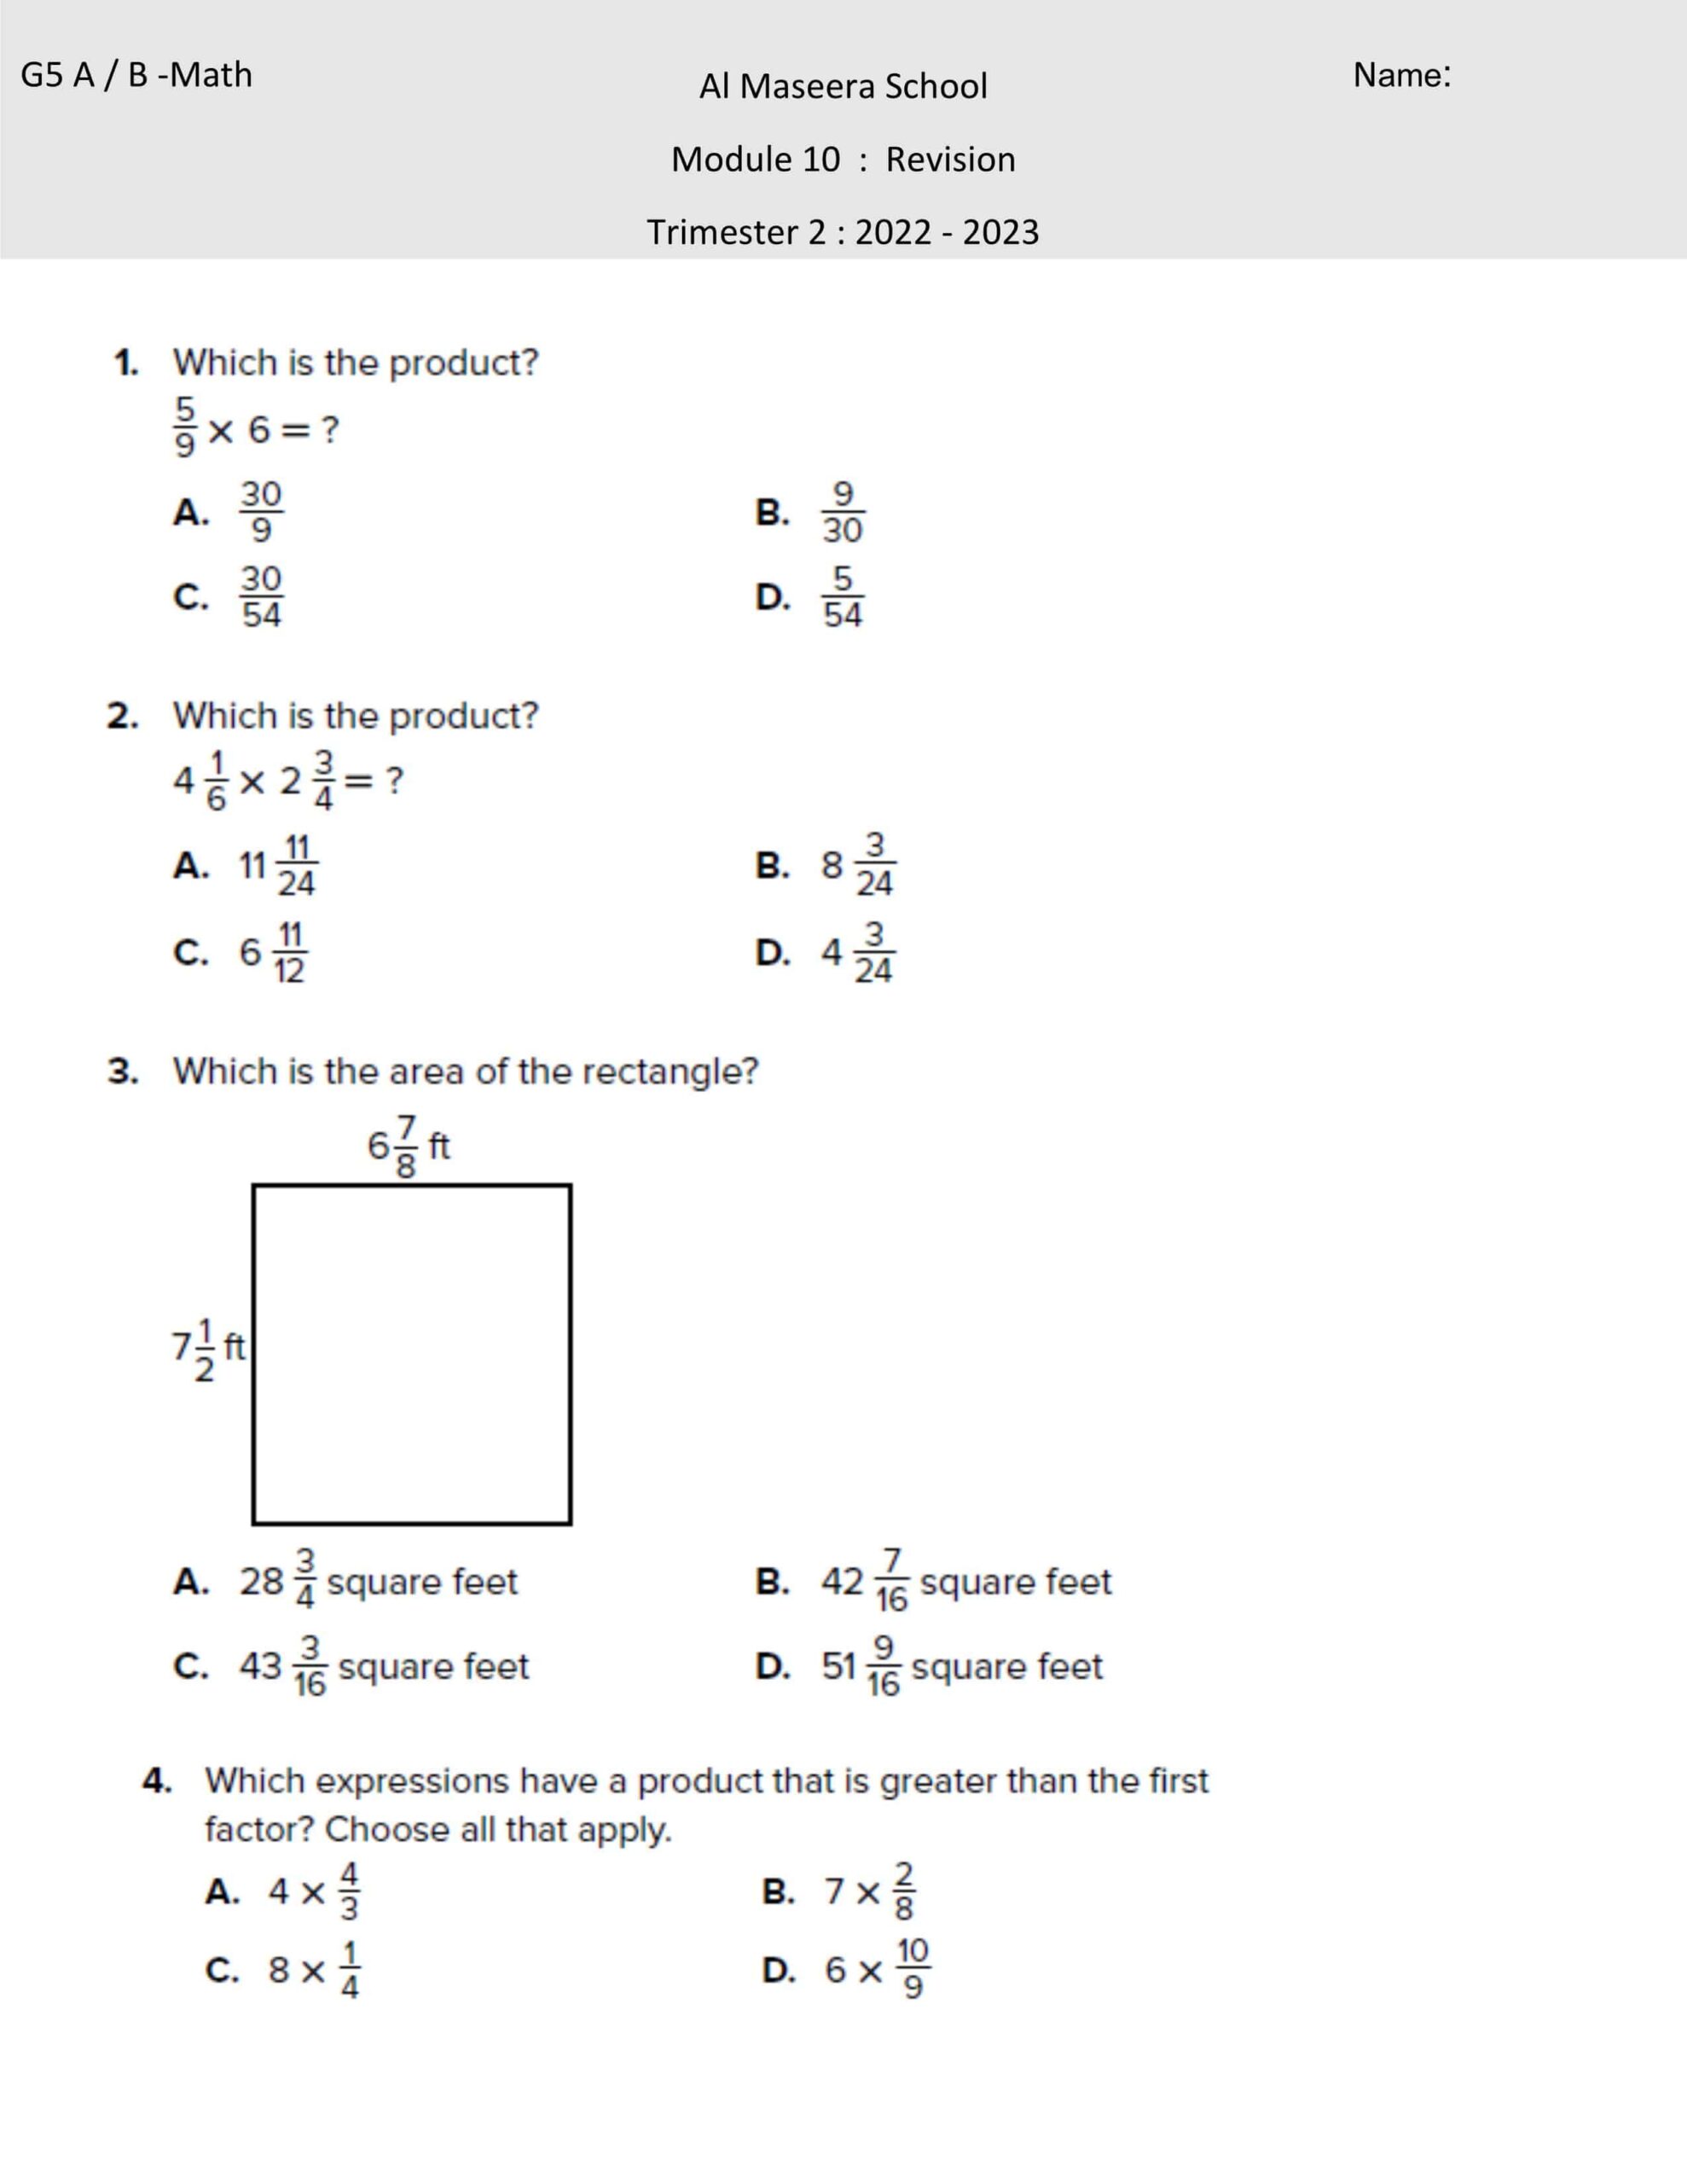 حل أوراق عمل Module 10 Revision الرياضيات المتكاملة الصف الخامس